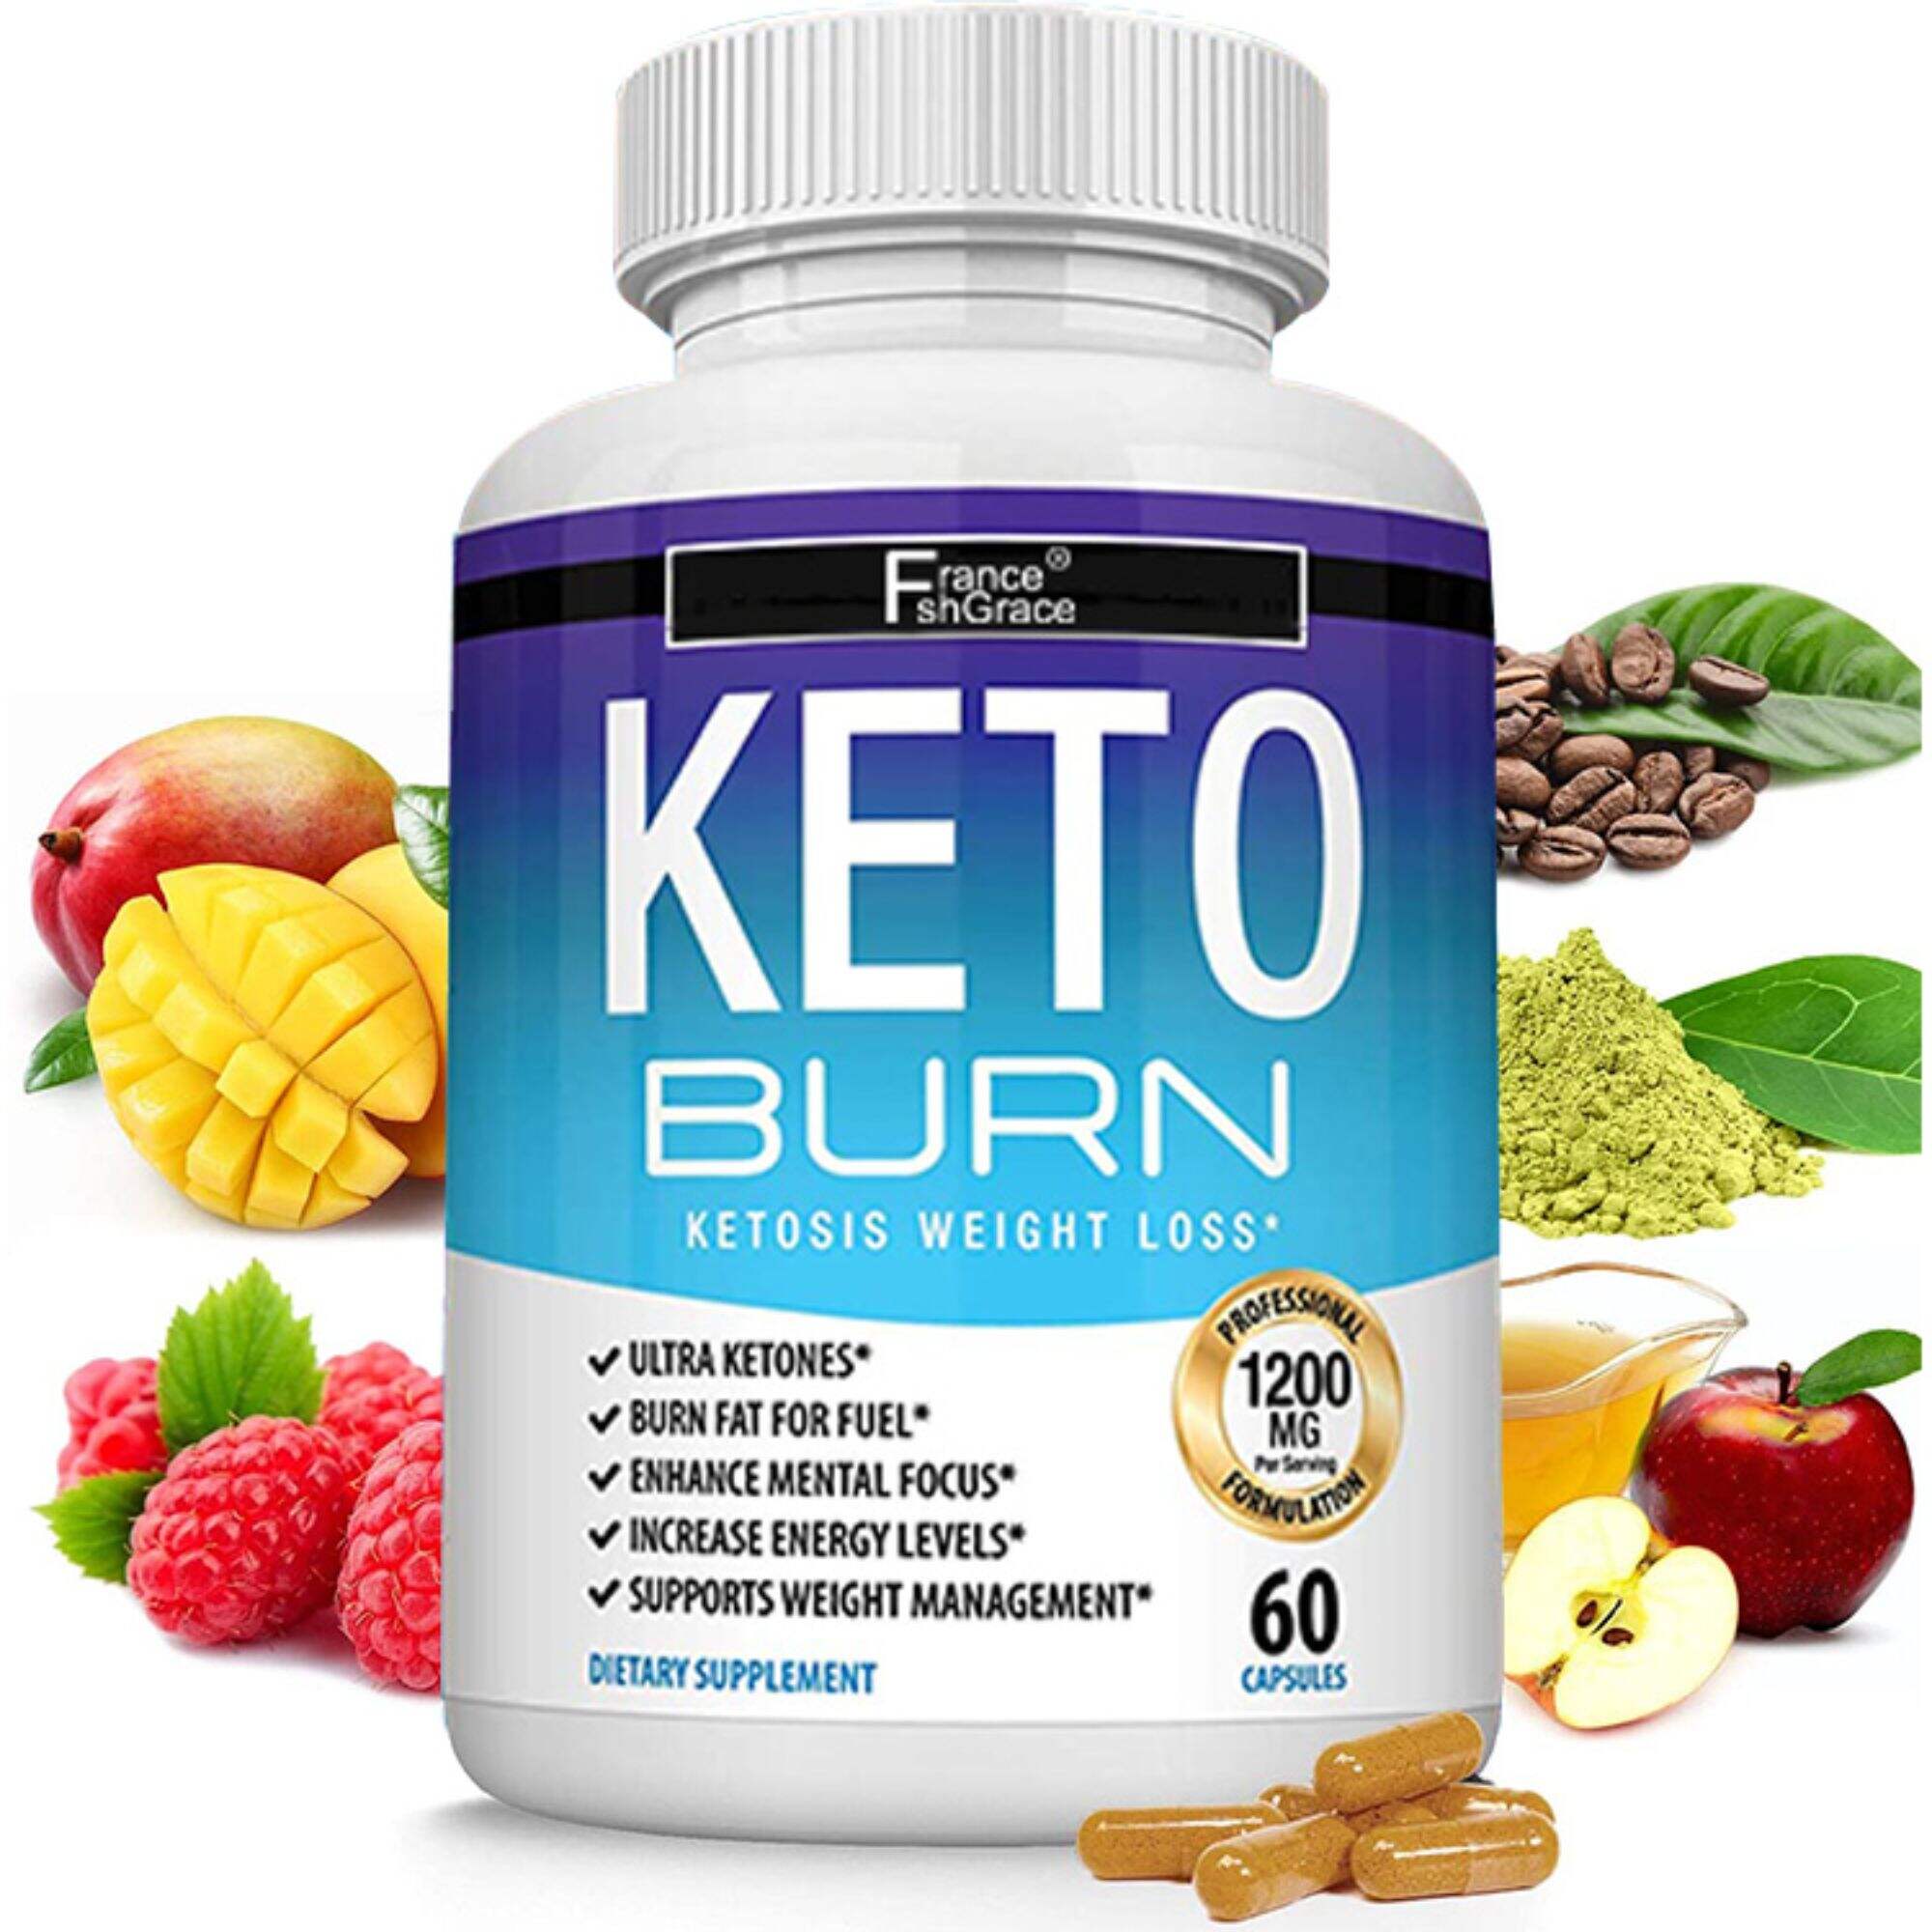 Keto Burn Pills Ketosis Weight Loss